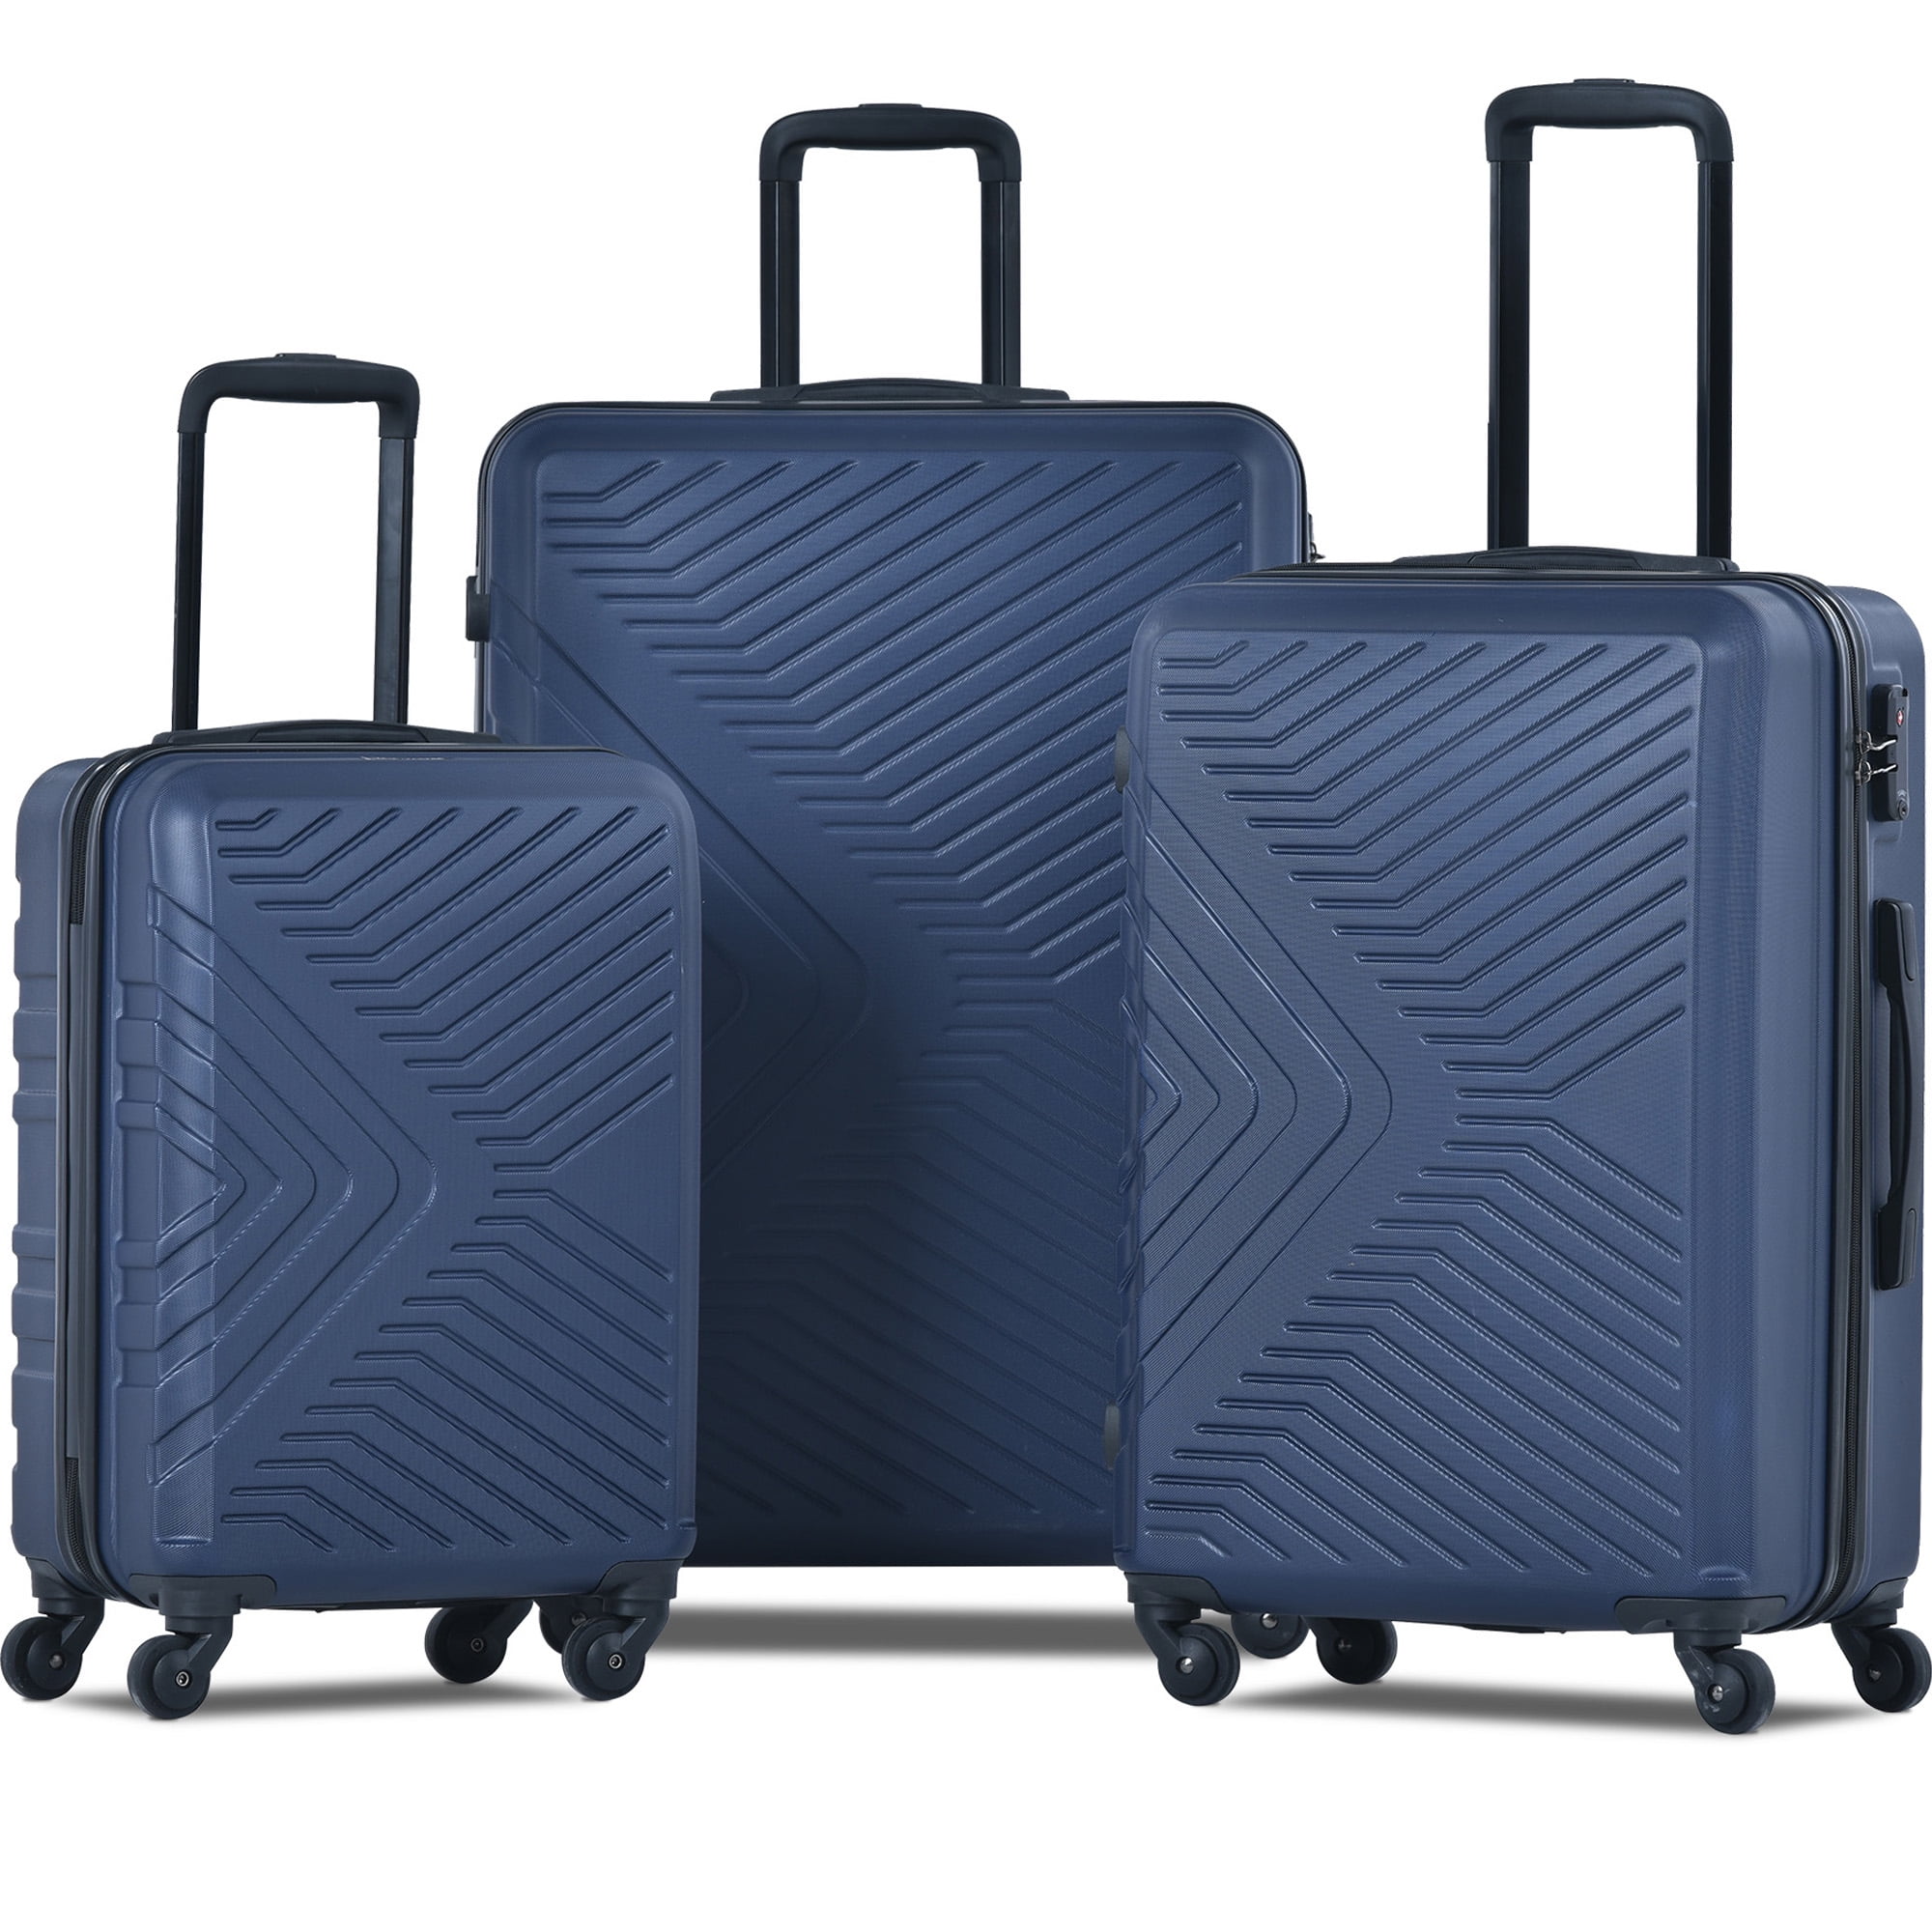 Upgrade Carry on Luggage Set of 3, Roling Suitcase 4-Wheel TSA Lock ...